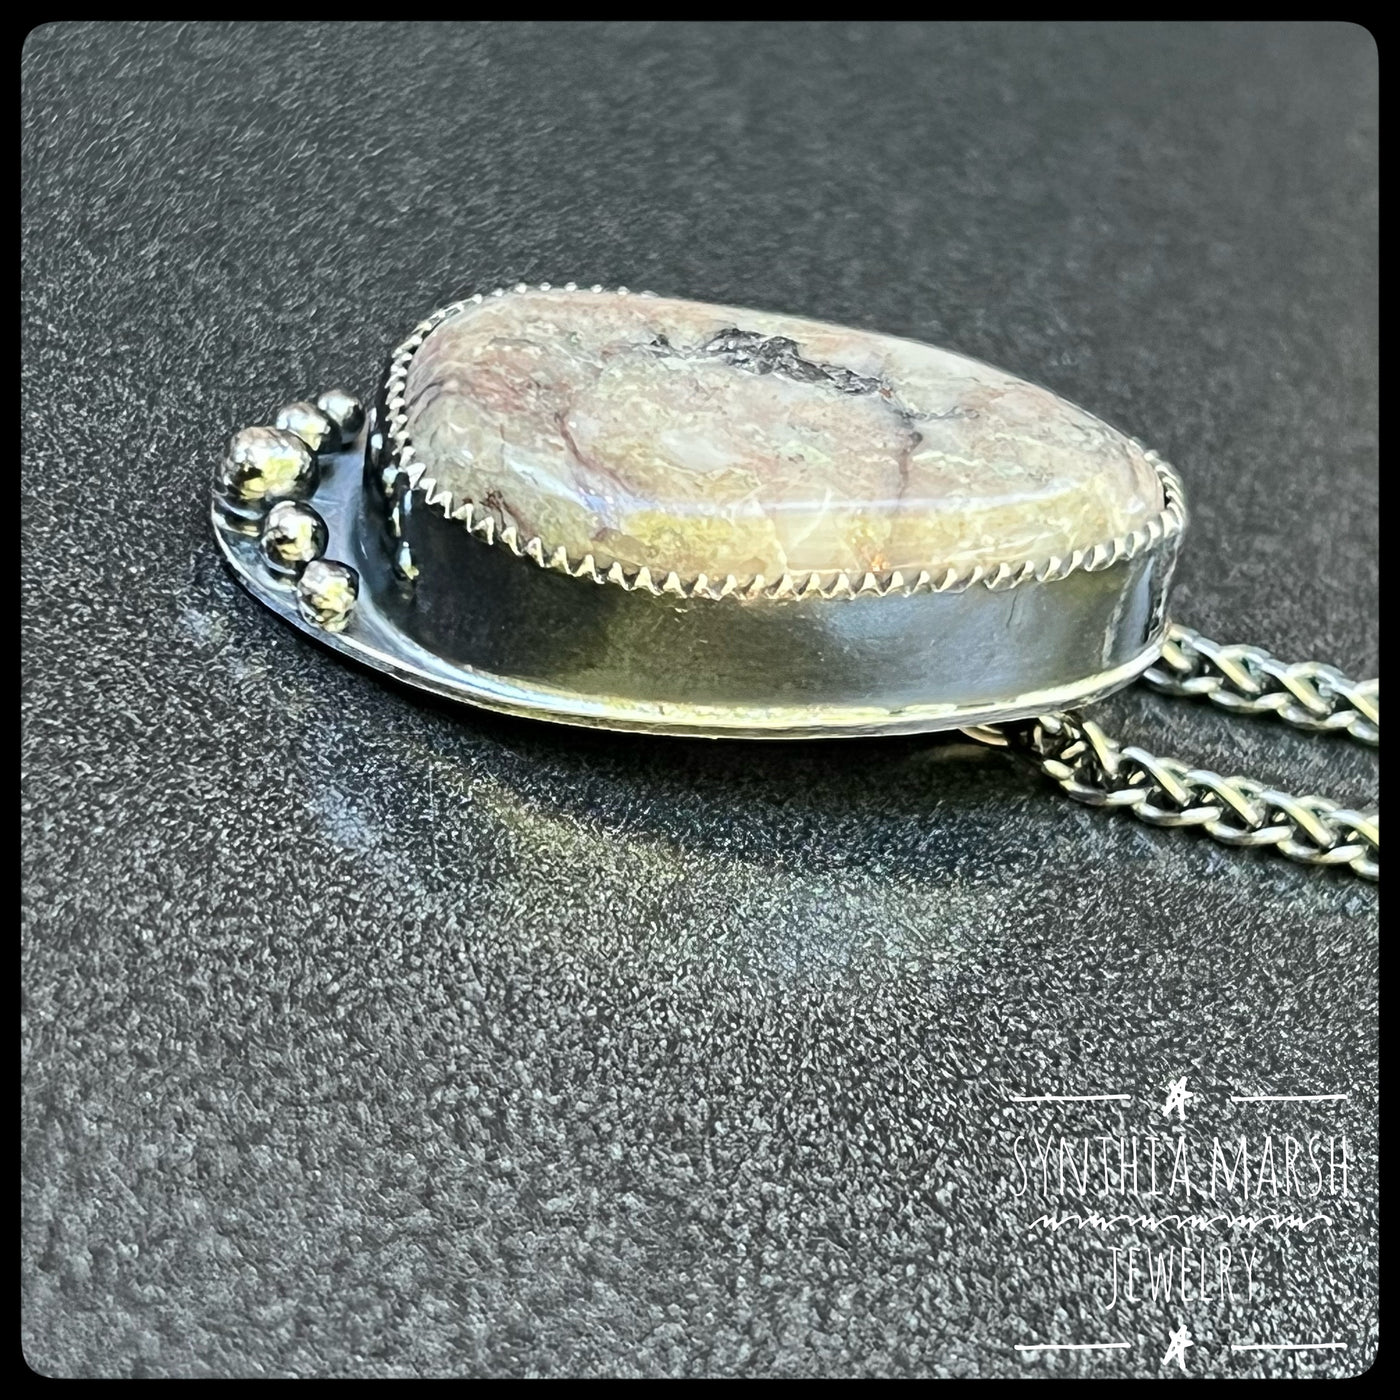 Michigan Native Copper Pendant Necklace ~ Sterling Silver ~ Made in Michigan